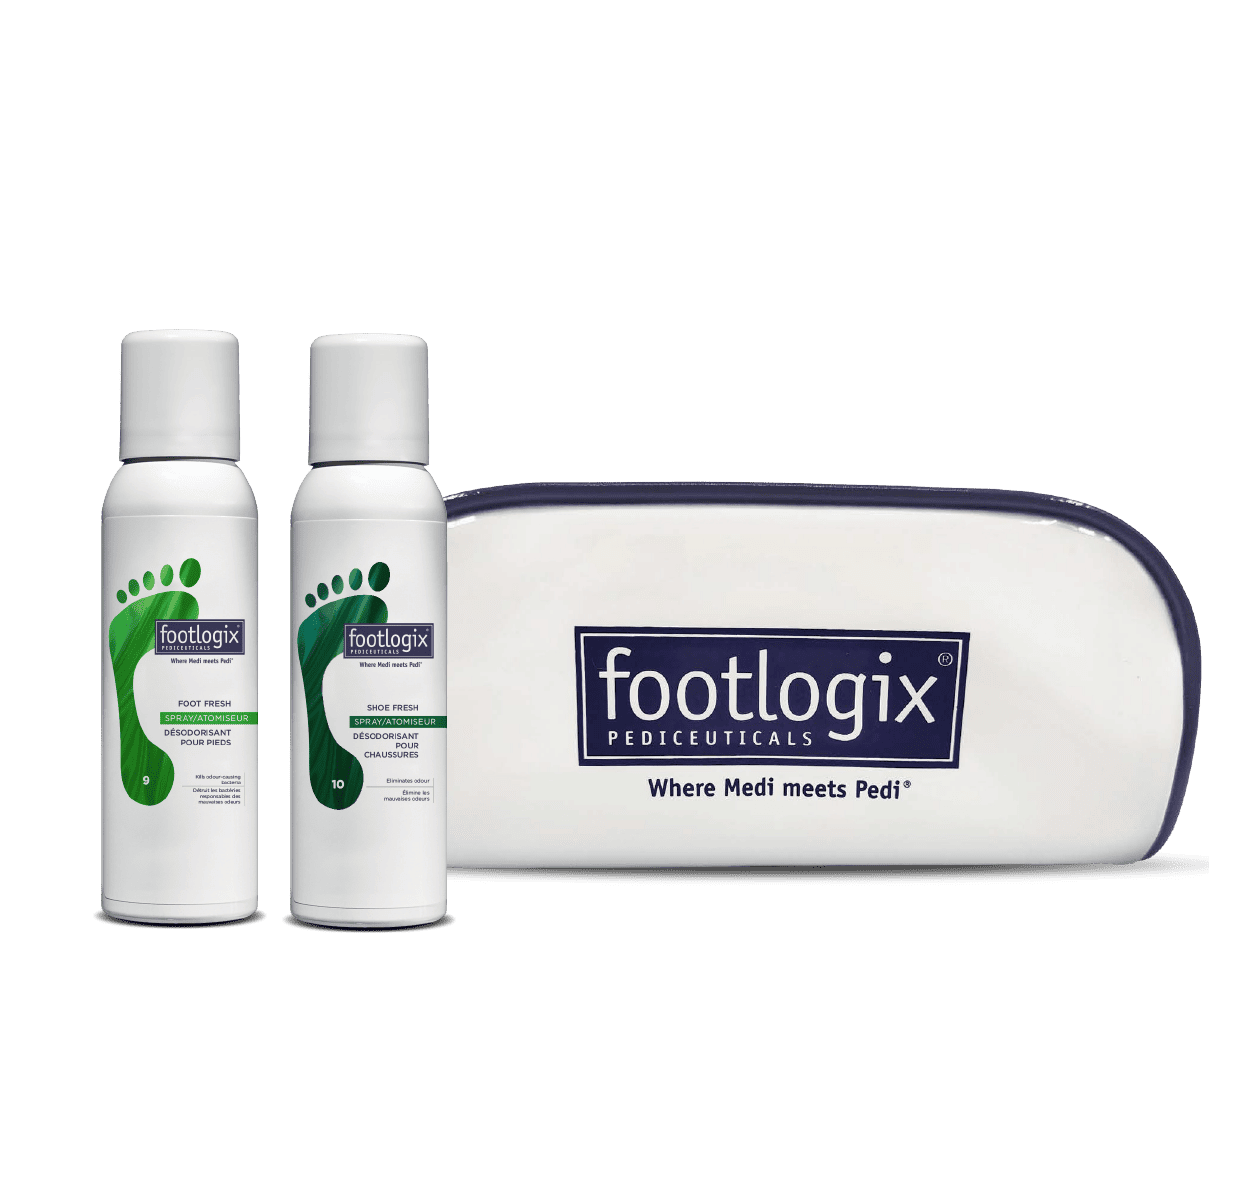 Footlogix - Best Foot File